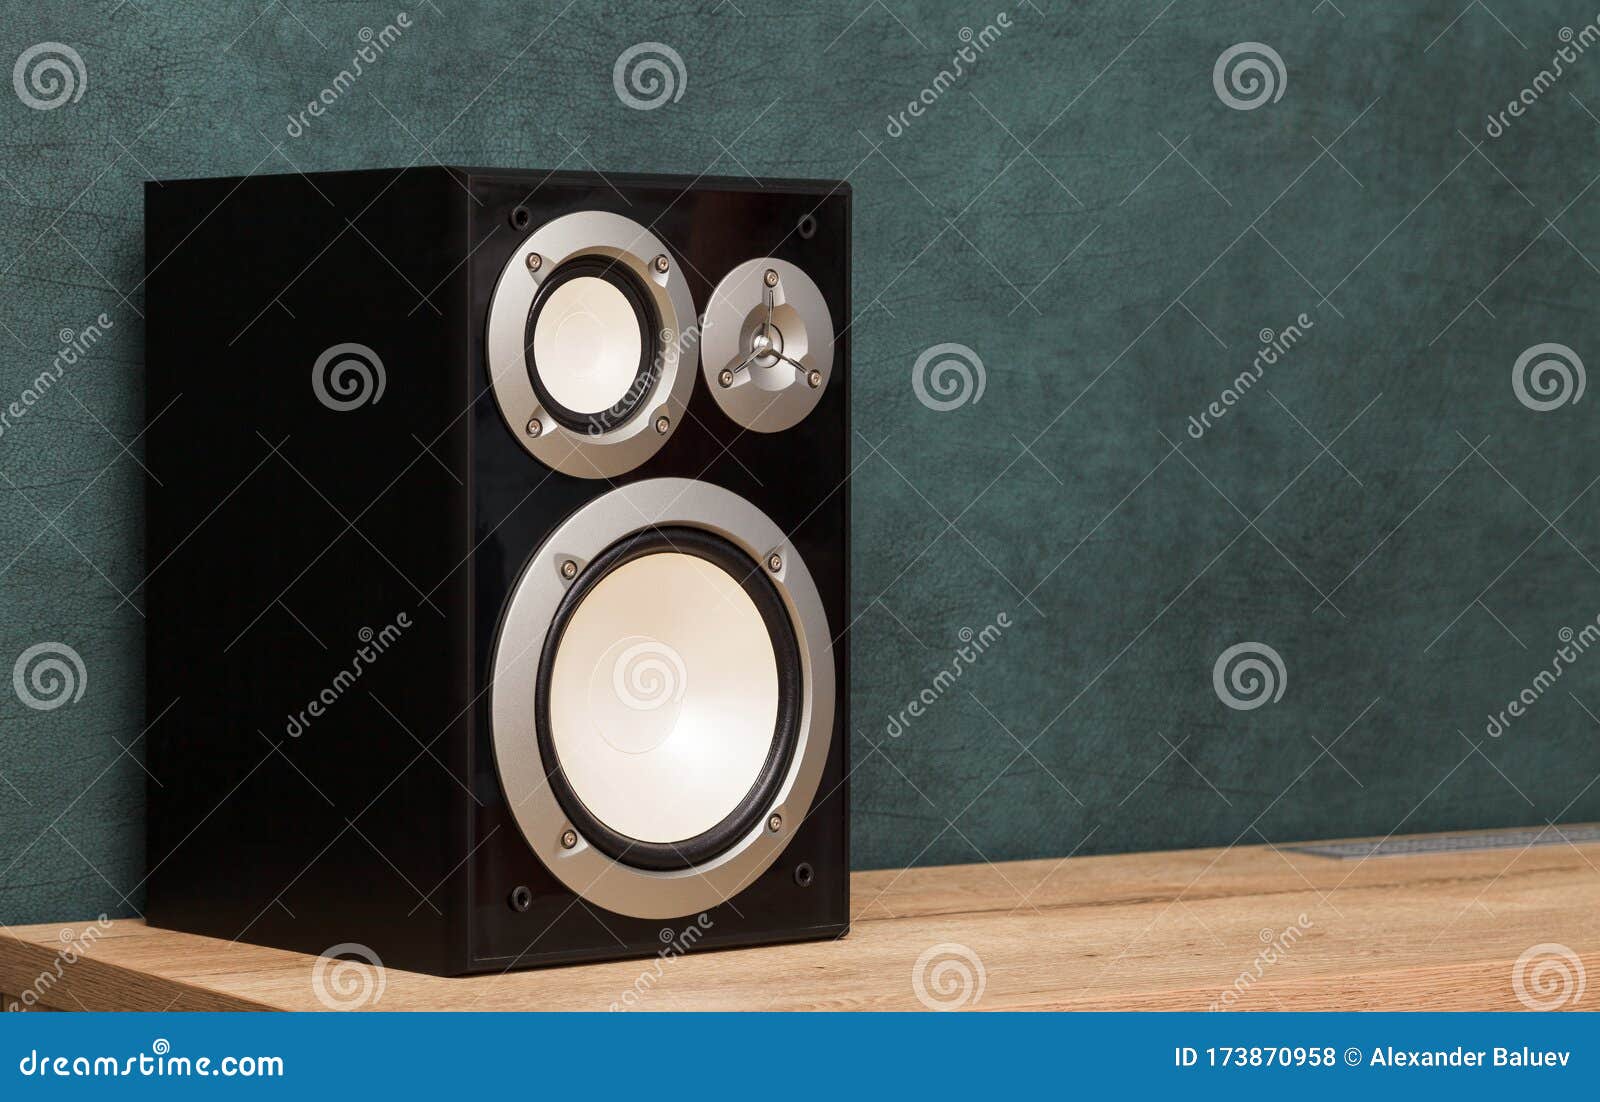 1100 Car Door Speaker Images Stock Photos  Vectors  Shutterstock